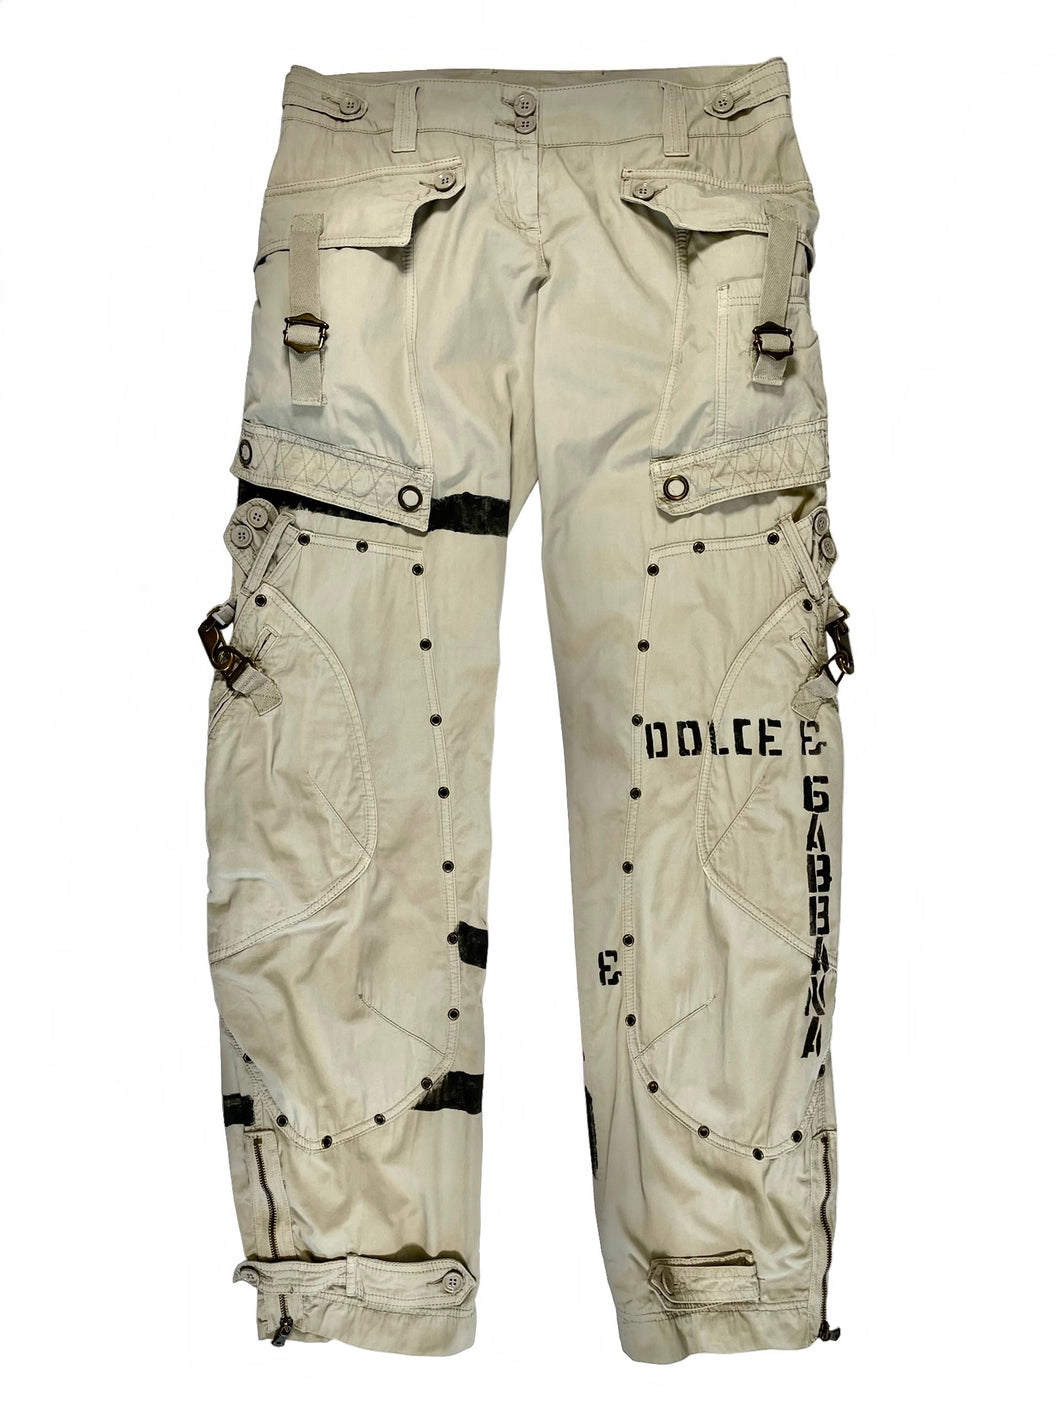 2000’s Dolce & Gabbana bondage military cargo pants